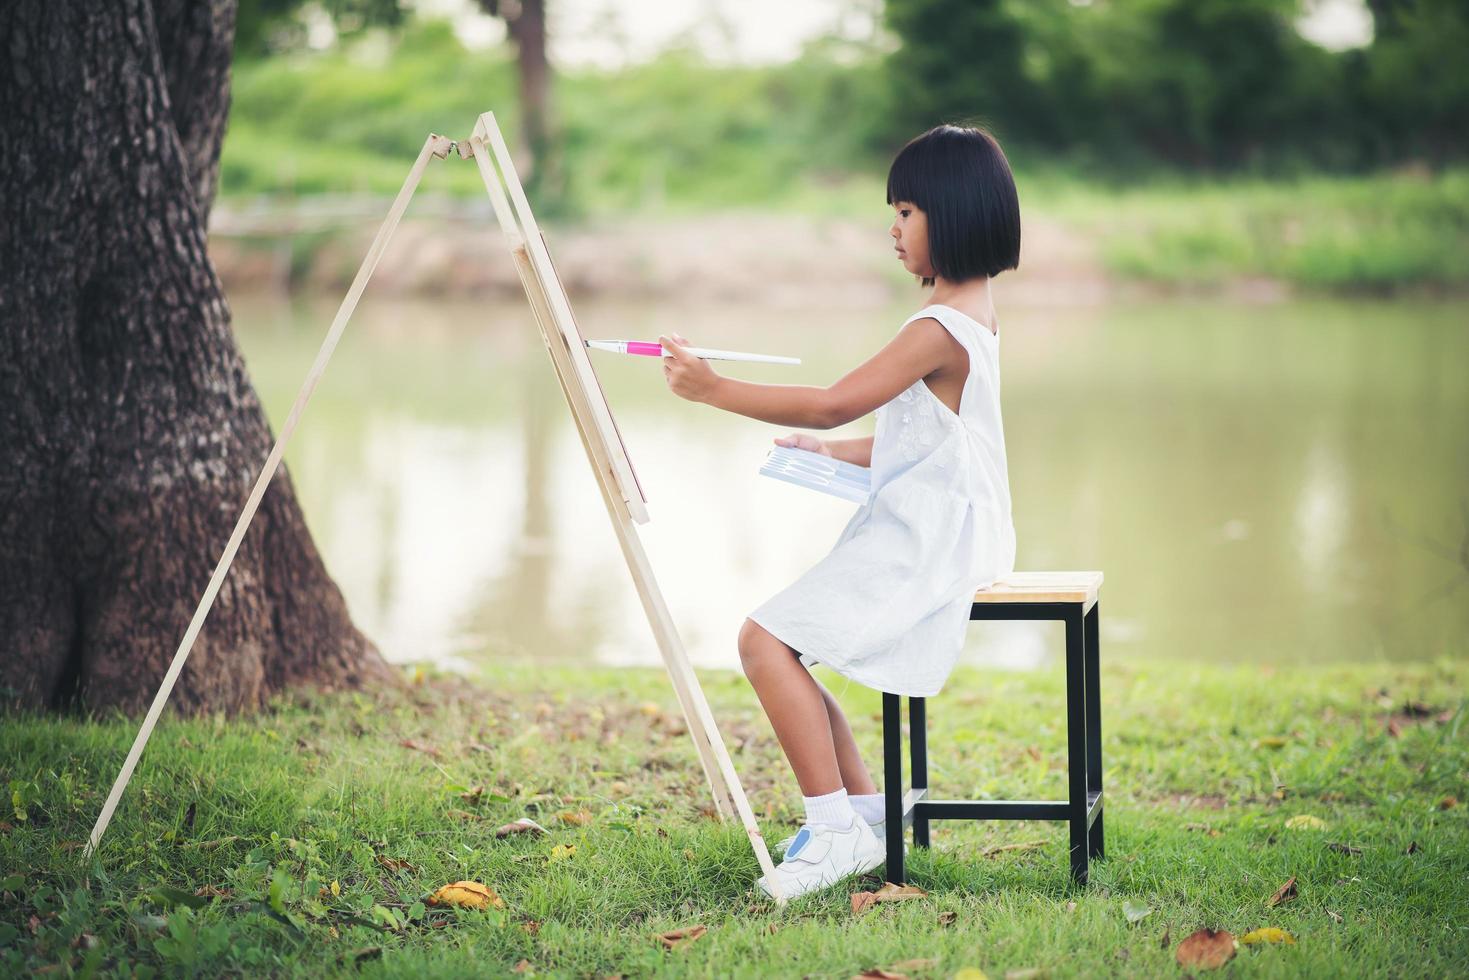 niña artista pintando un cuadro en el parque foto